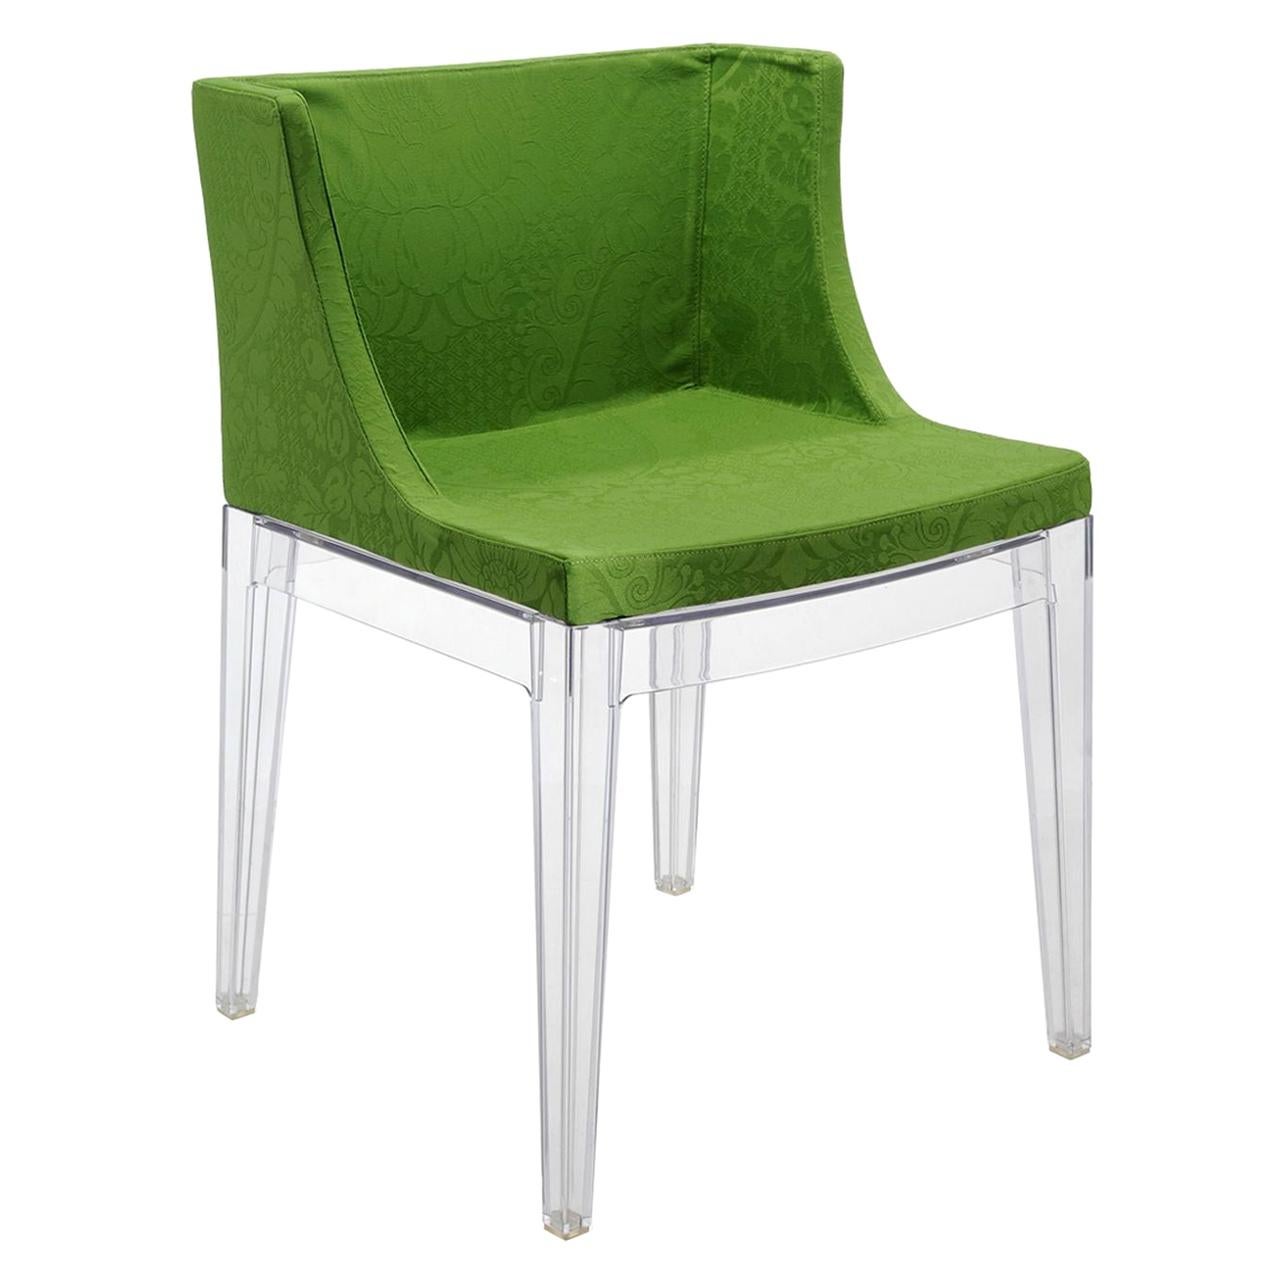 Kartell Mademoiselle-Stuhl von Philippe Starck aus grünem Damast